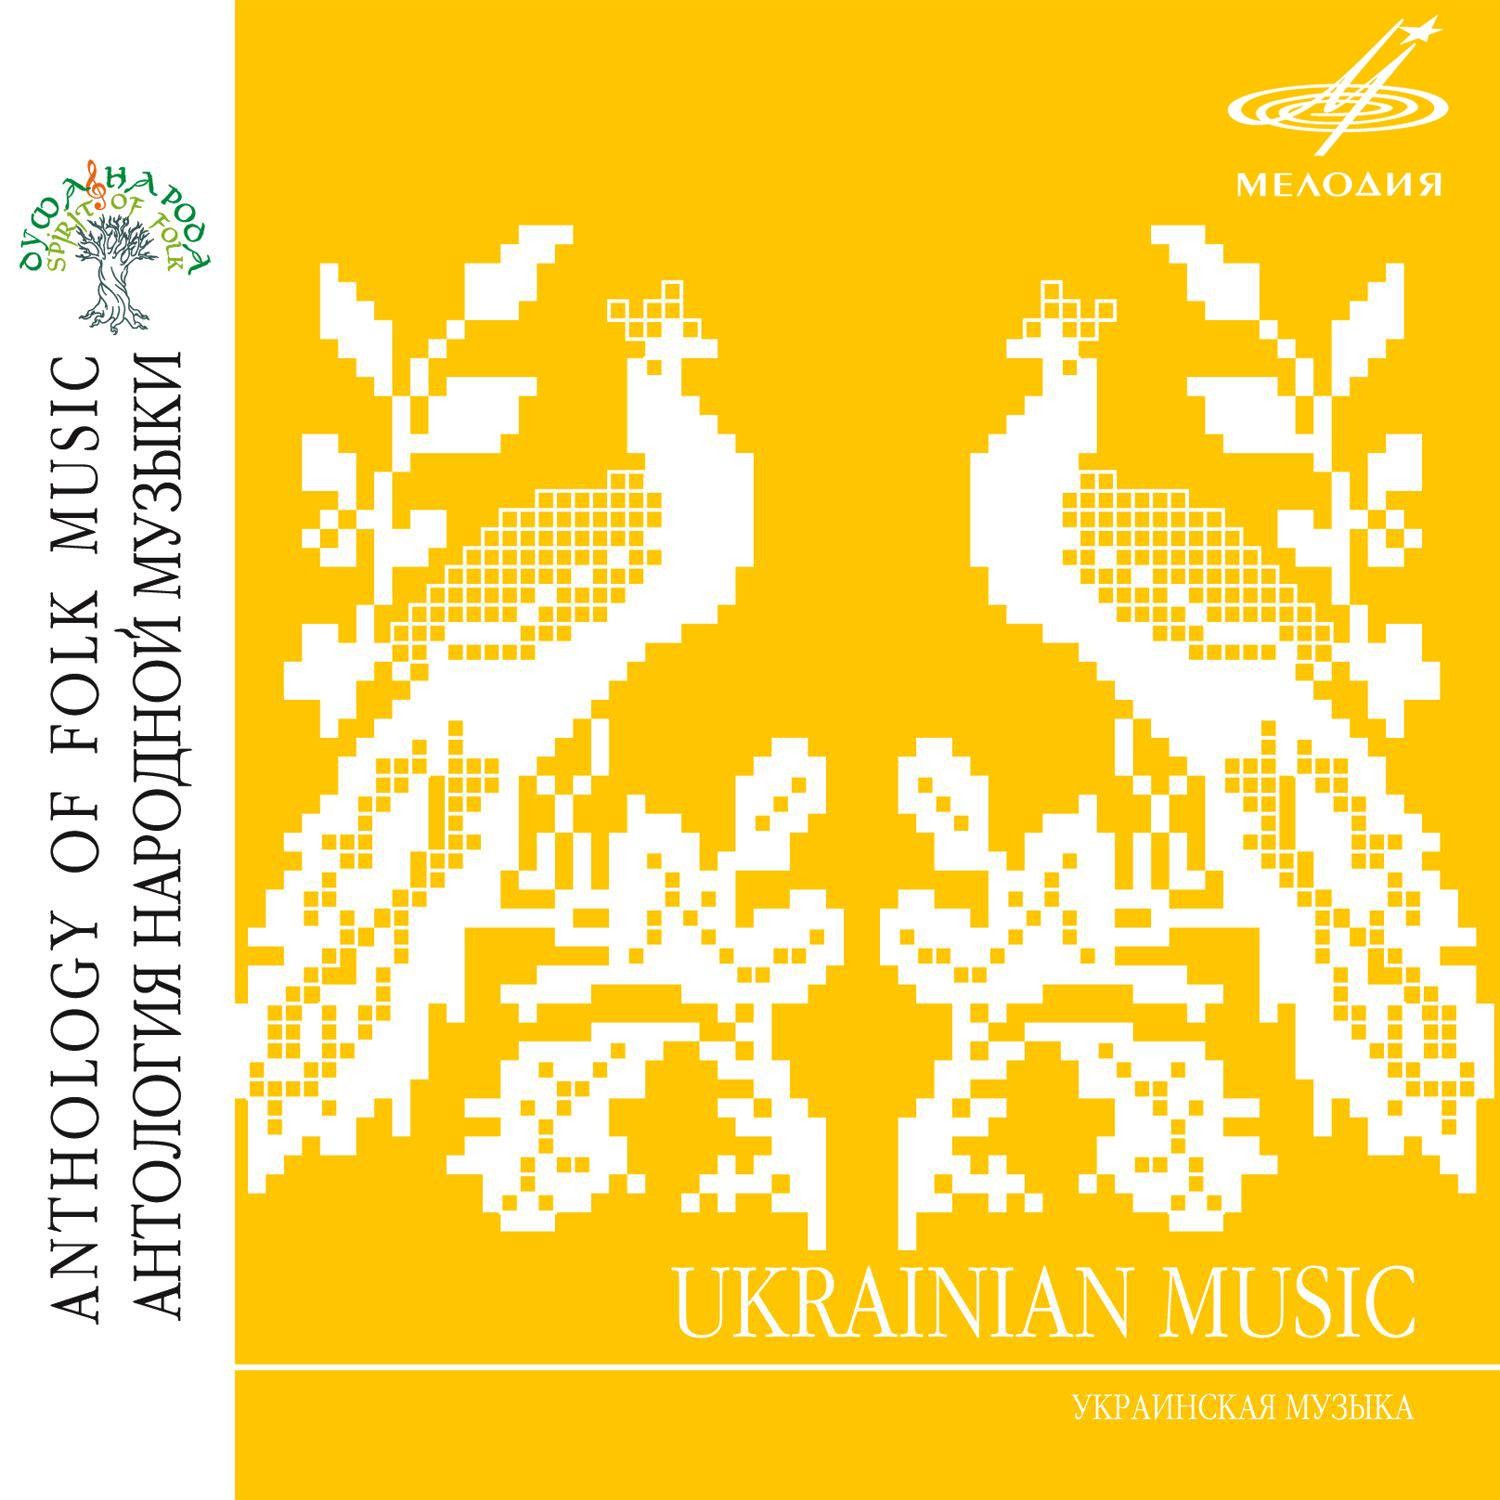 Ukrainian Music (Антология народной музыки: Украинская музыка)